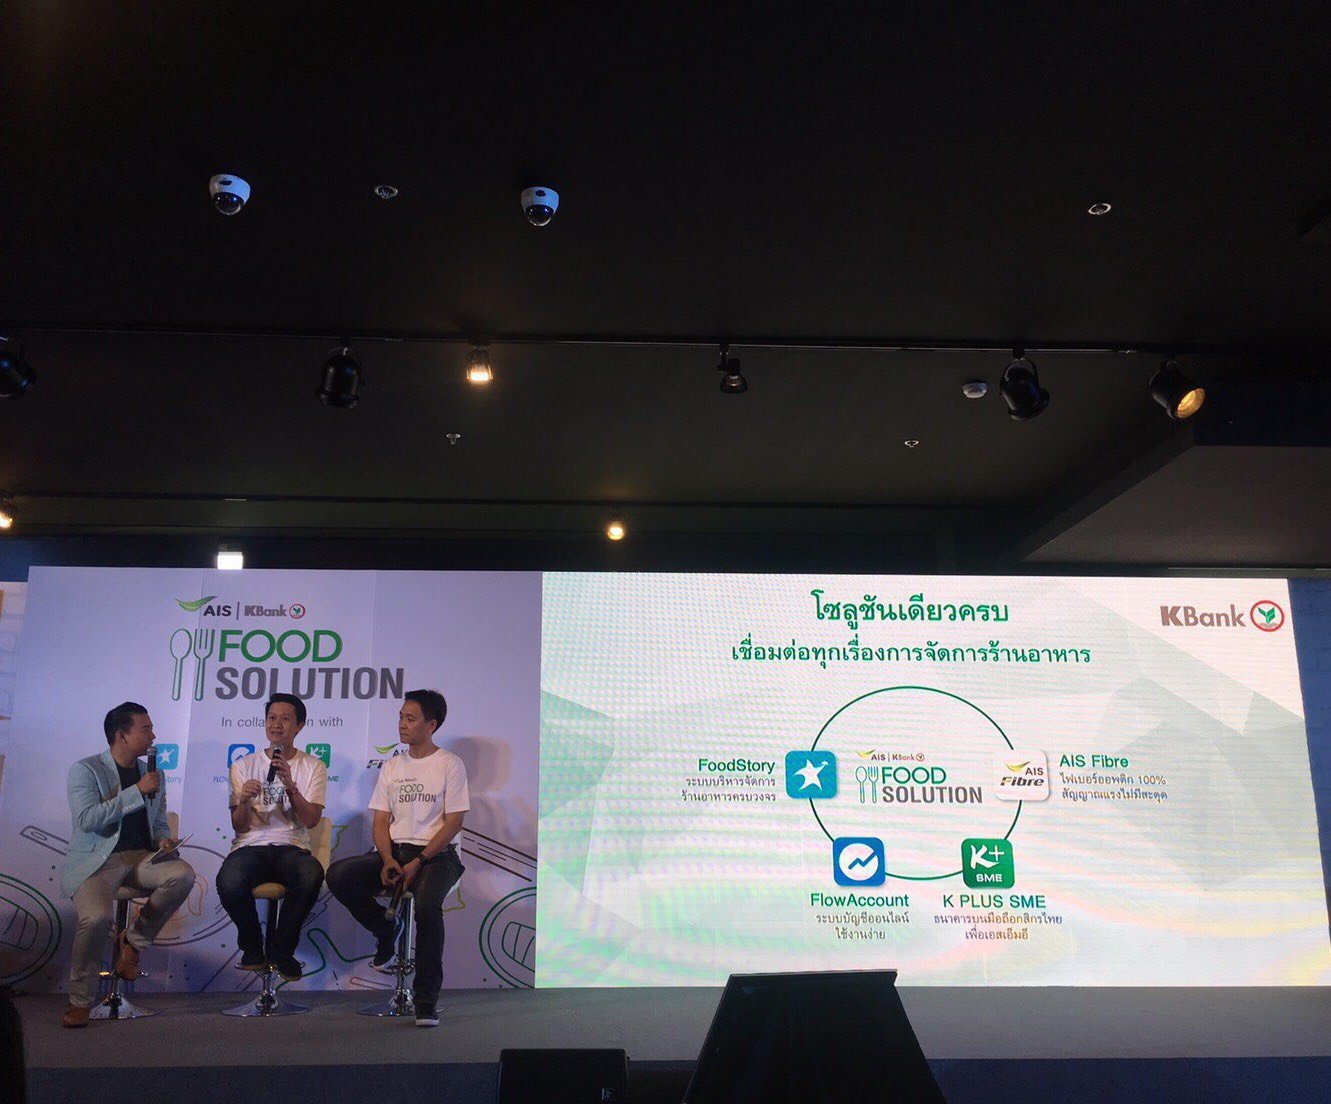 นายพัชร สมะลาภา รองกรรมการผู้จัดการอาวุโส ธนาคารกสิกรไทย ให้ข้อมูลถึงแนวโน้มธุรกิจร้านอาหาร - Startup Thailand Focus